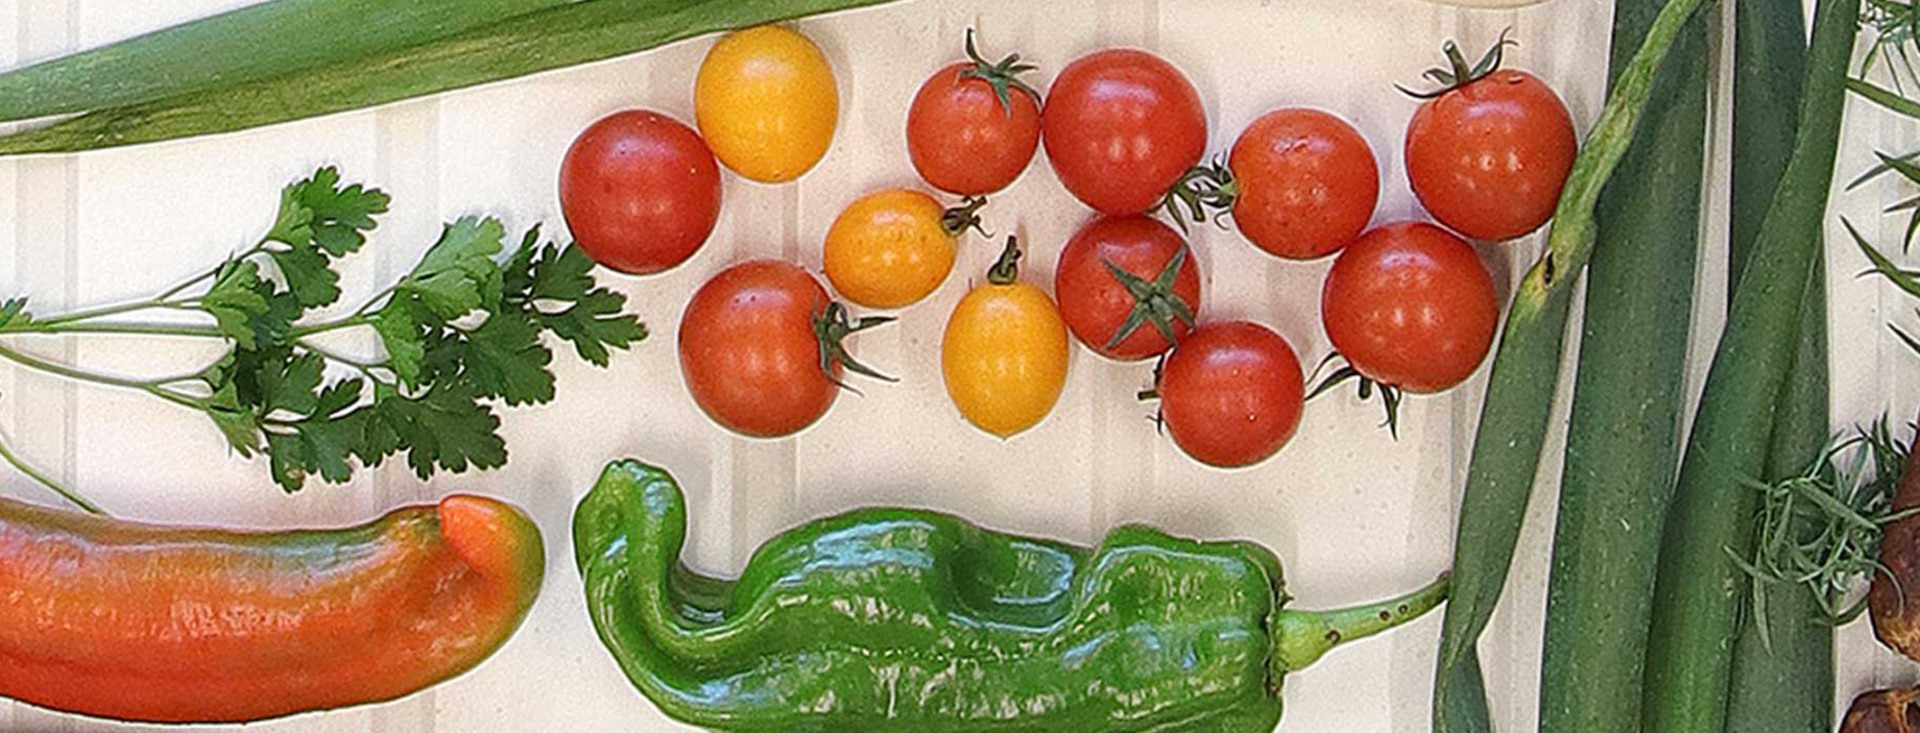 Ett bildmontage av tomater, paprikor, fik och lök fotograferat uppifrån.